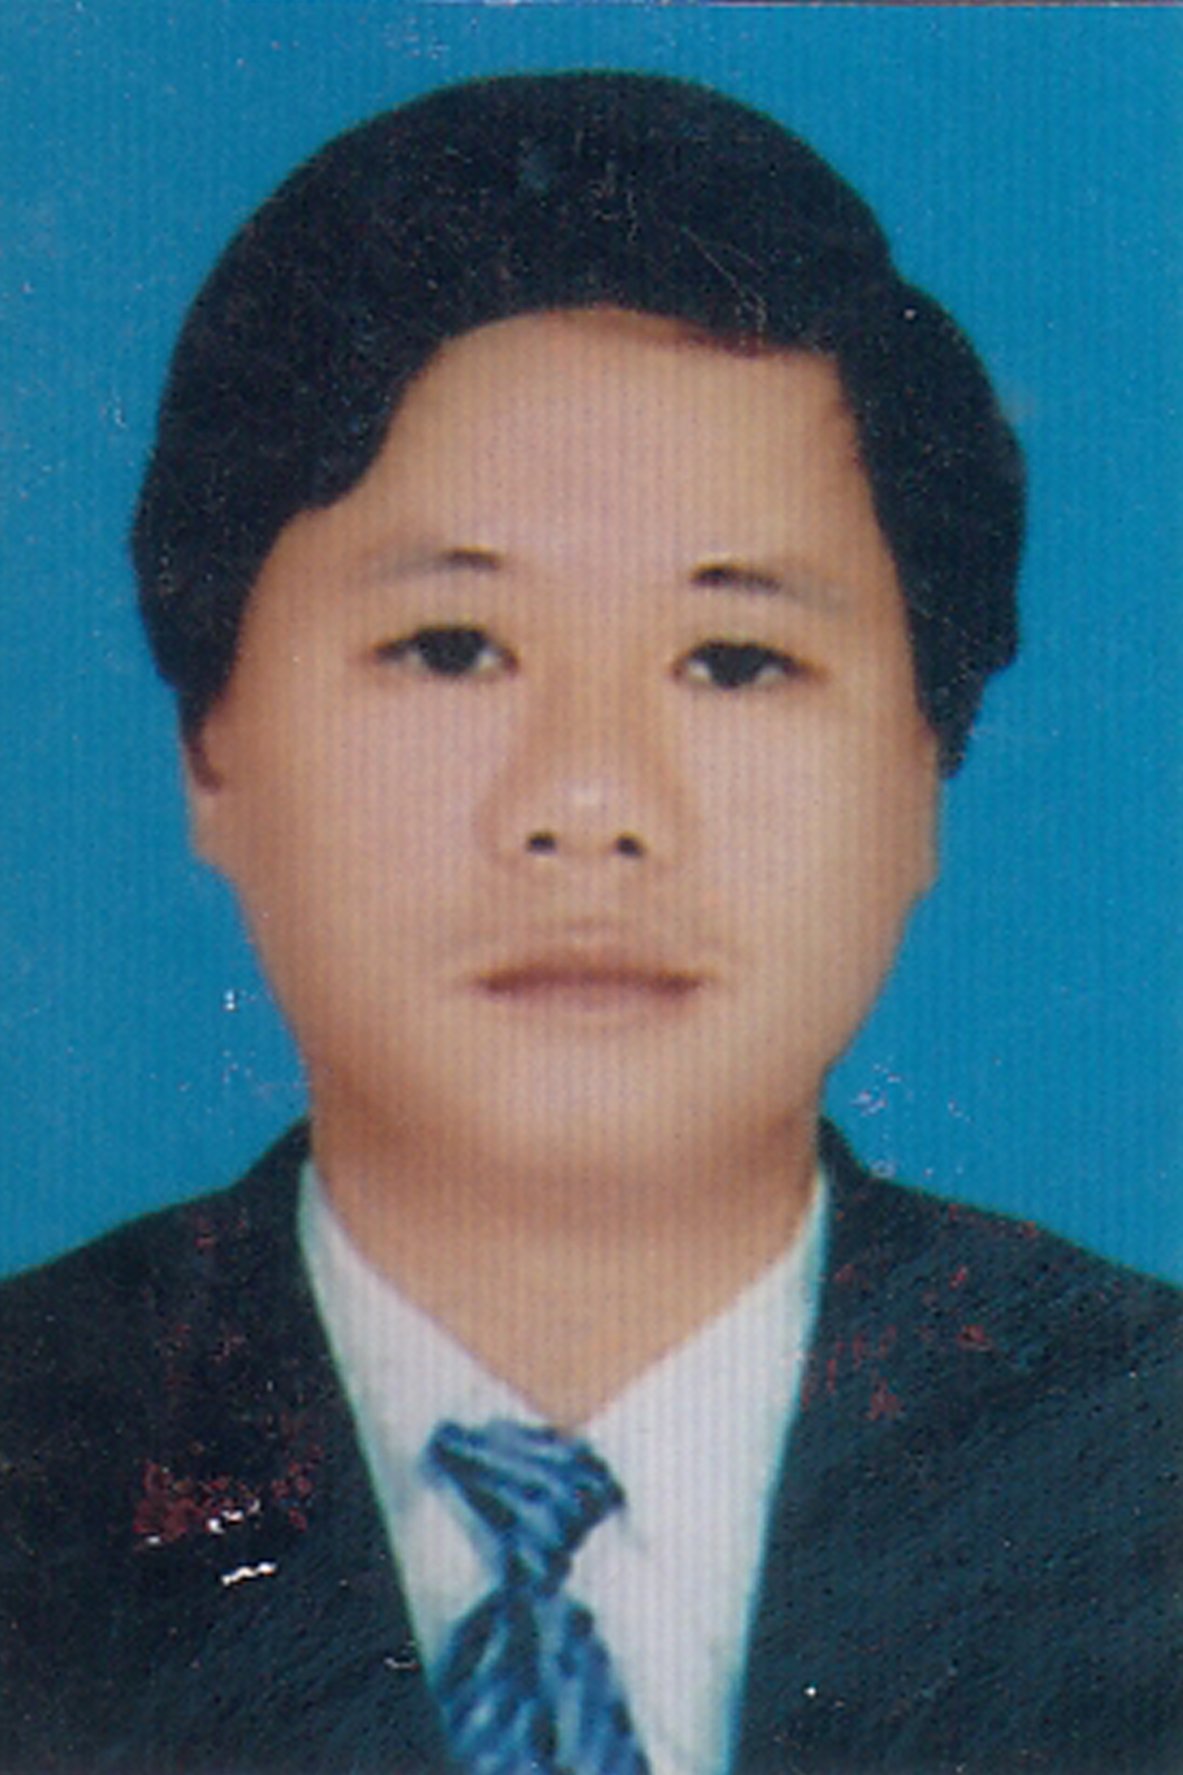 BSCK2 Nguyễn Tường Quang